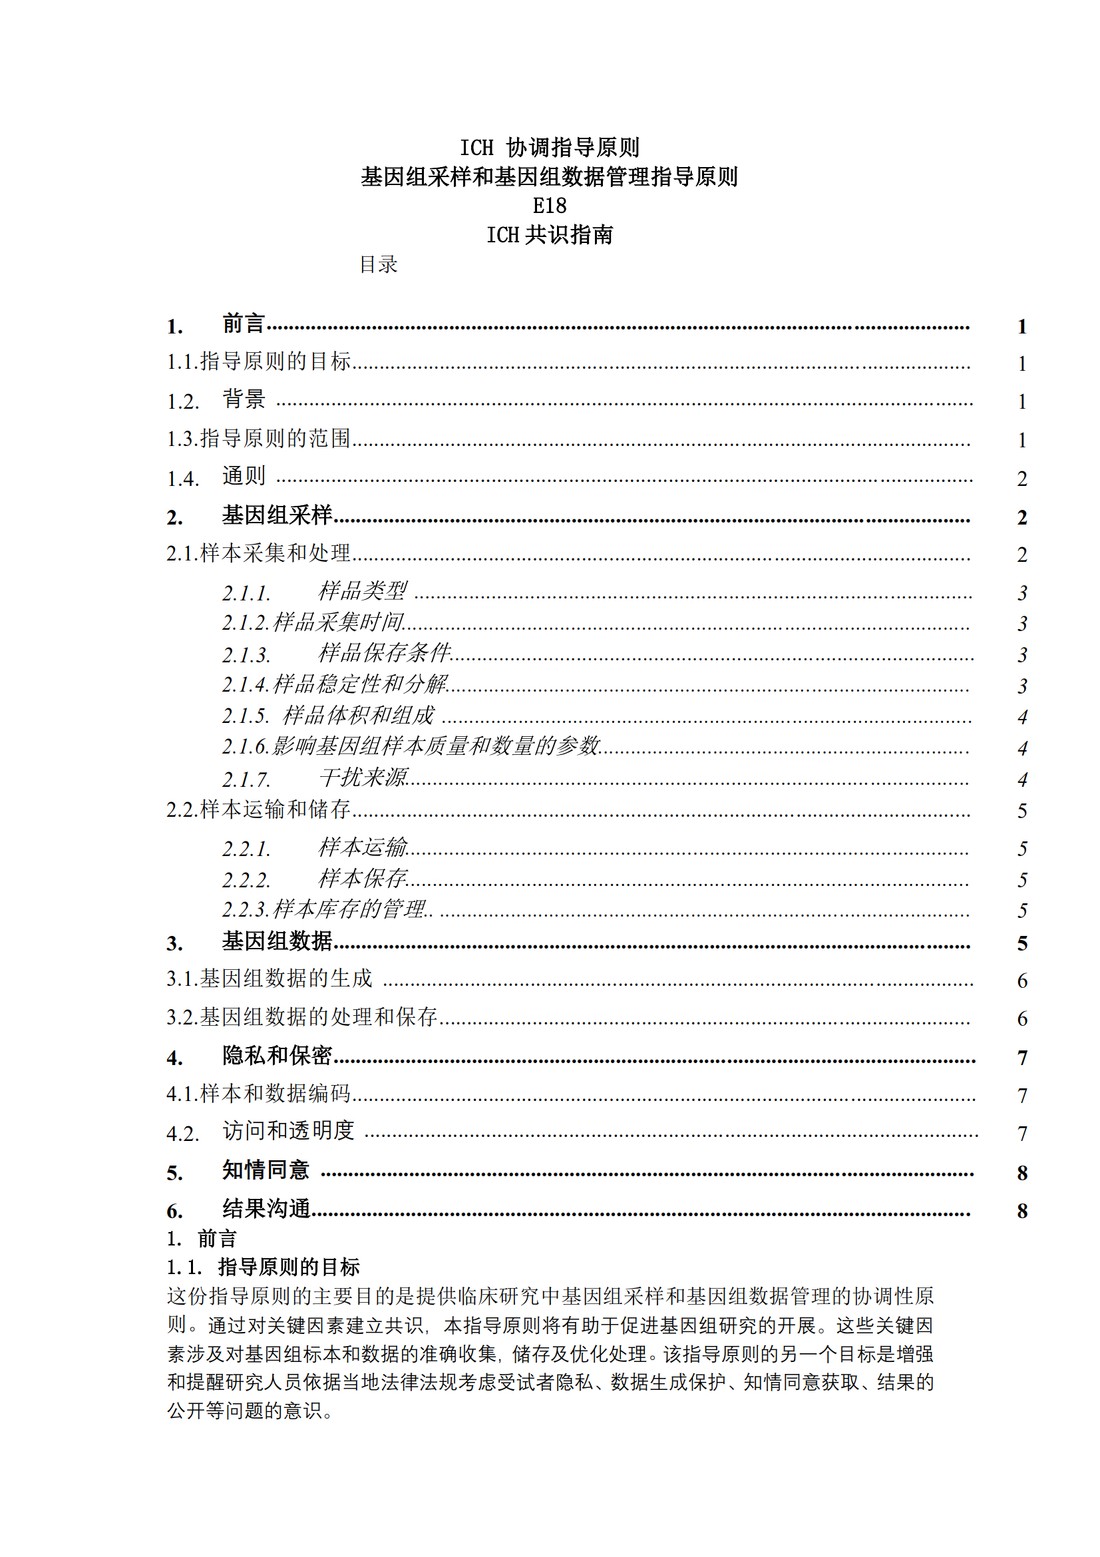 E18：基因组采样和基因组数据管理指导原则（中文翻译公开征求意见稿）_03.jpg